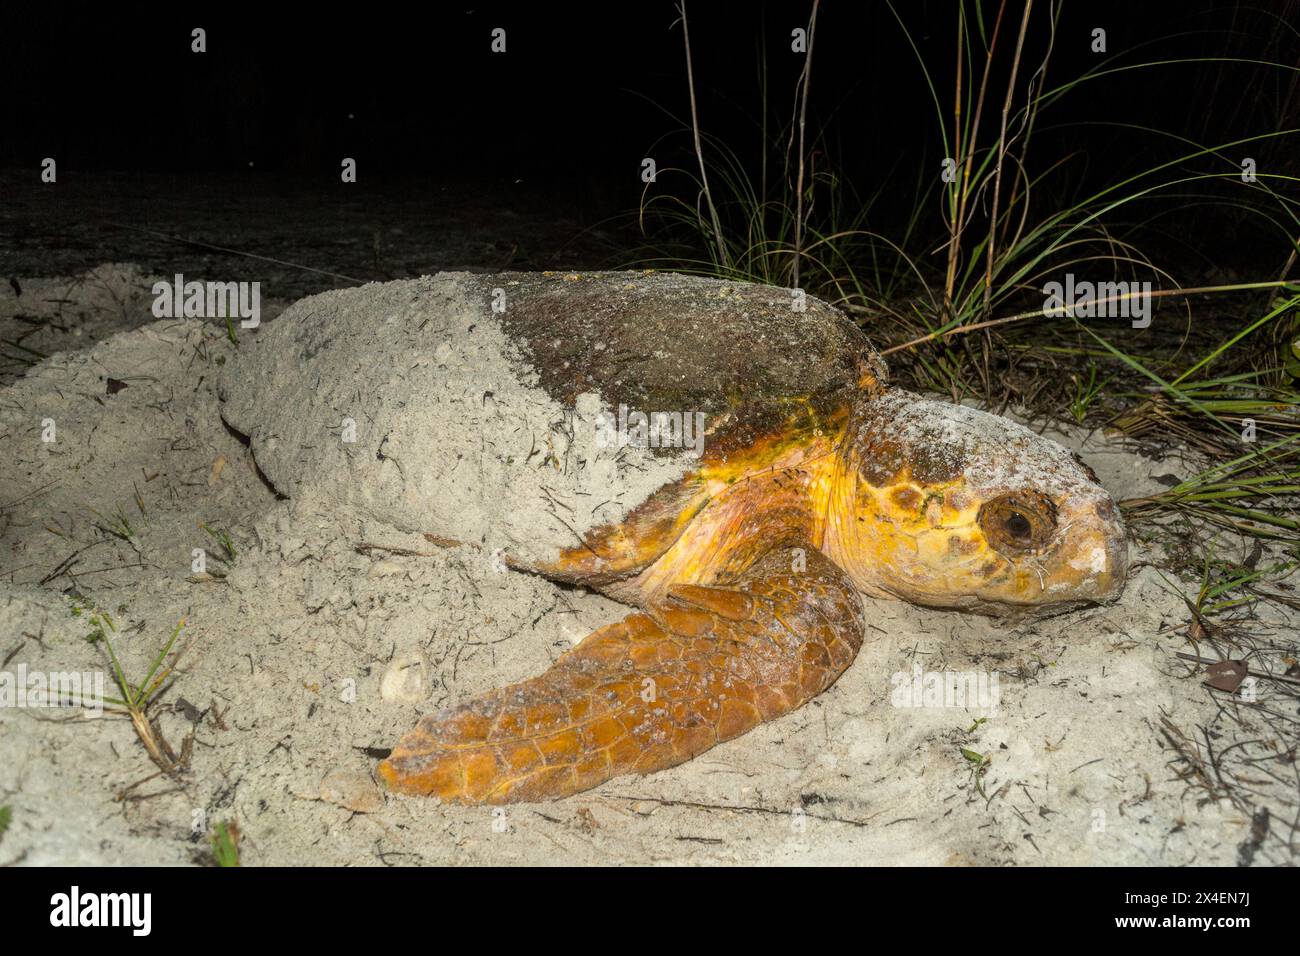 Eine Karettschildkröte begräbt ihr Nest, nachdem sie an einem Strand in Florida Eier gelegt hat. Stockfoto